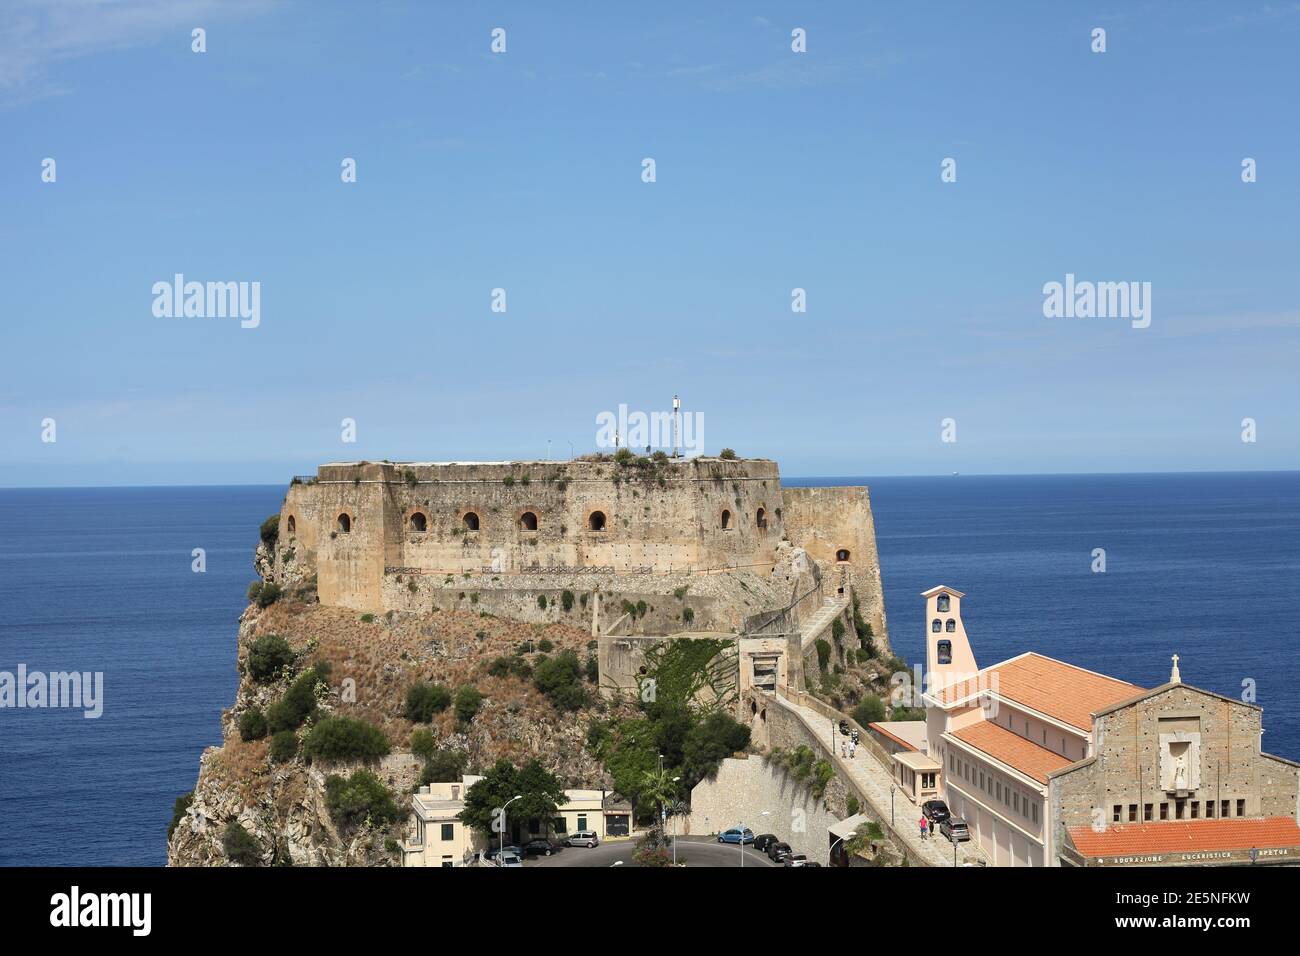 Castle Ruffo and church on top of promontory, Scilla, Reggio Calabria, Italy Stock Photo